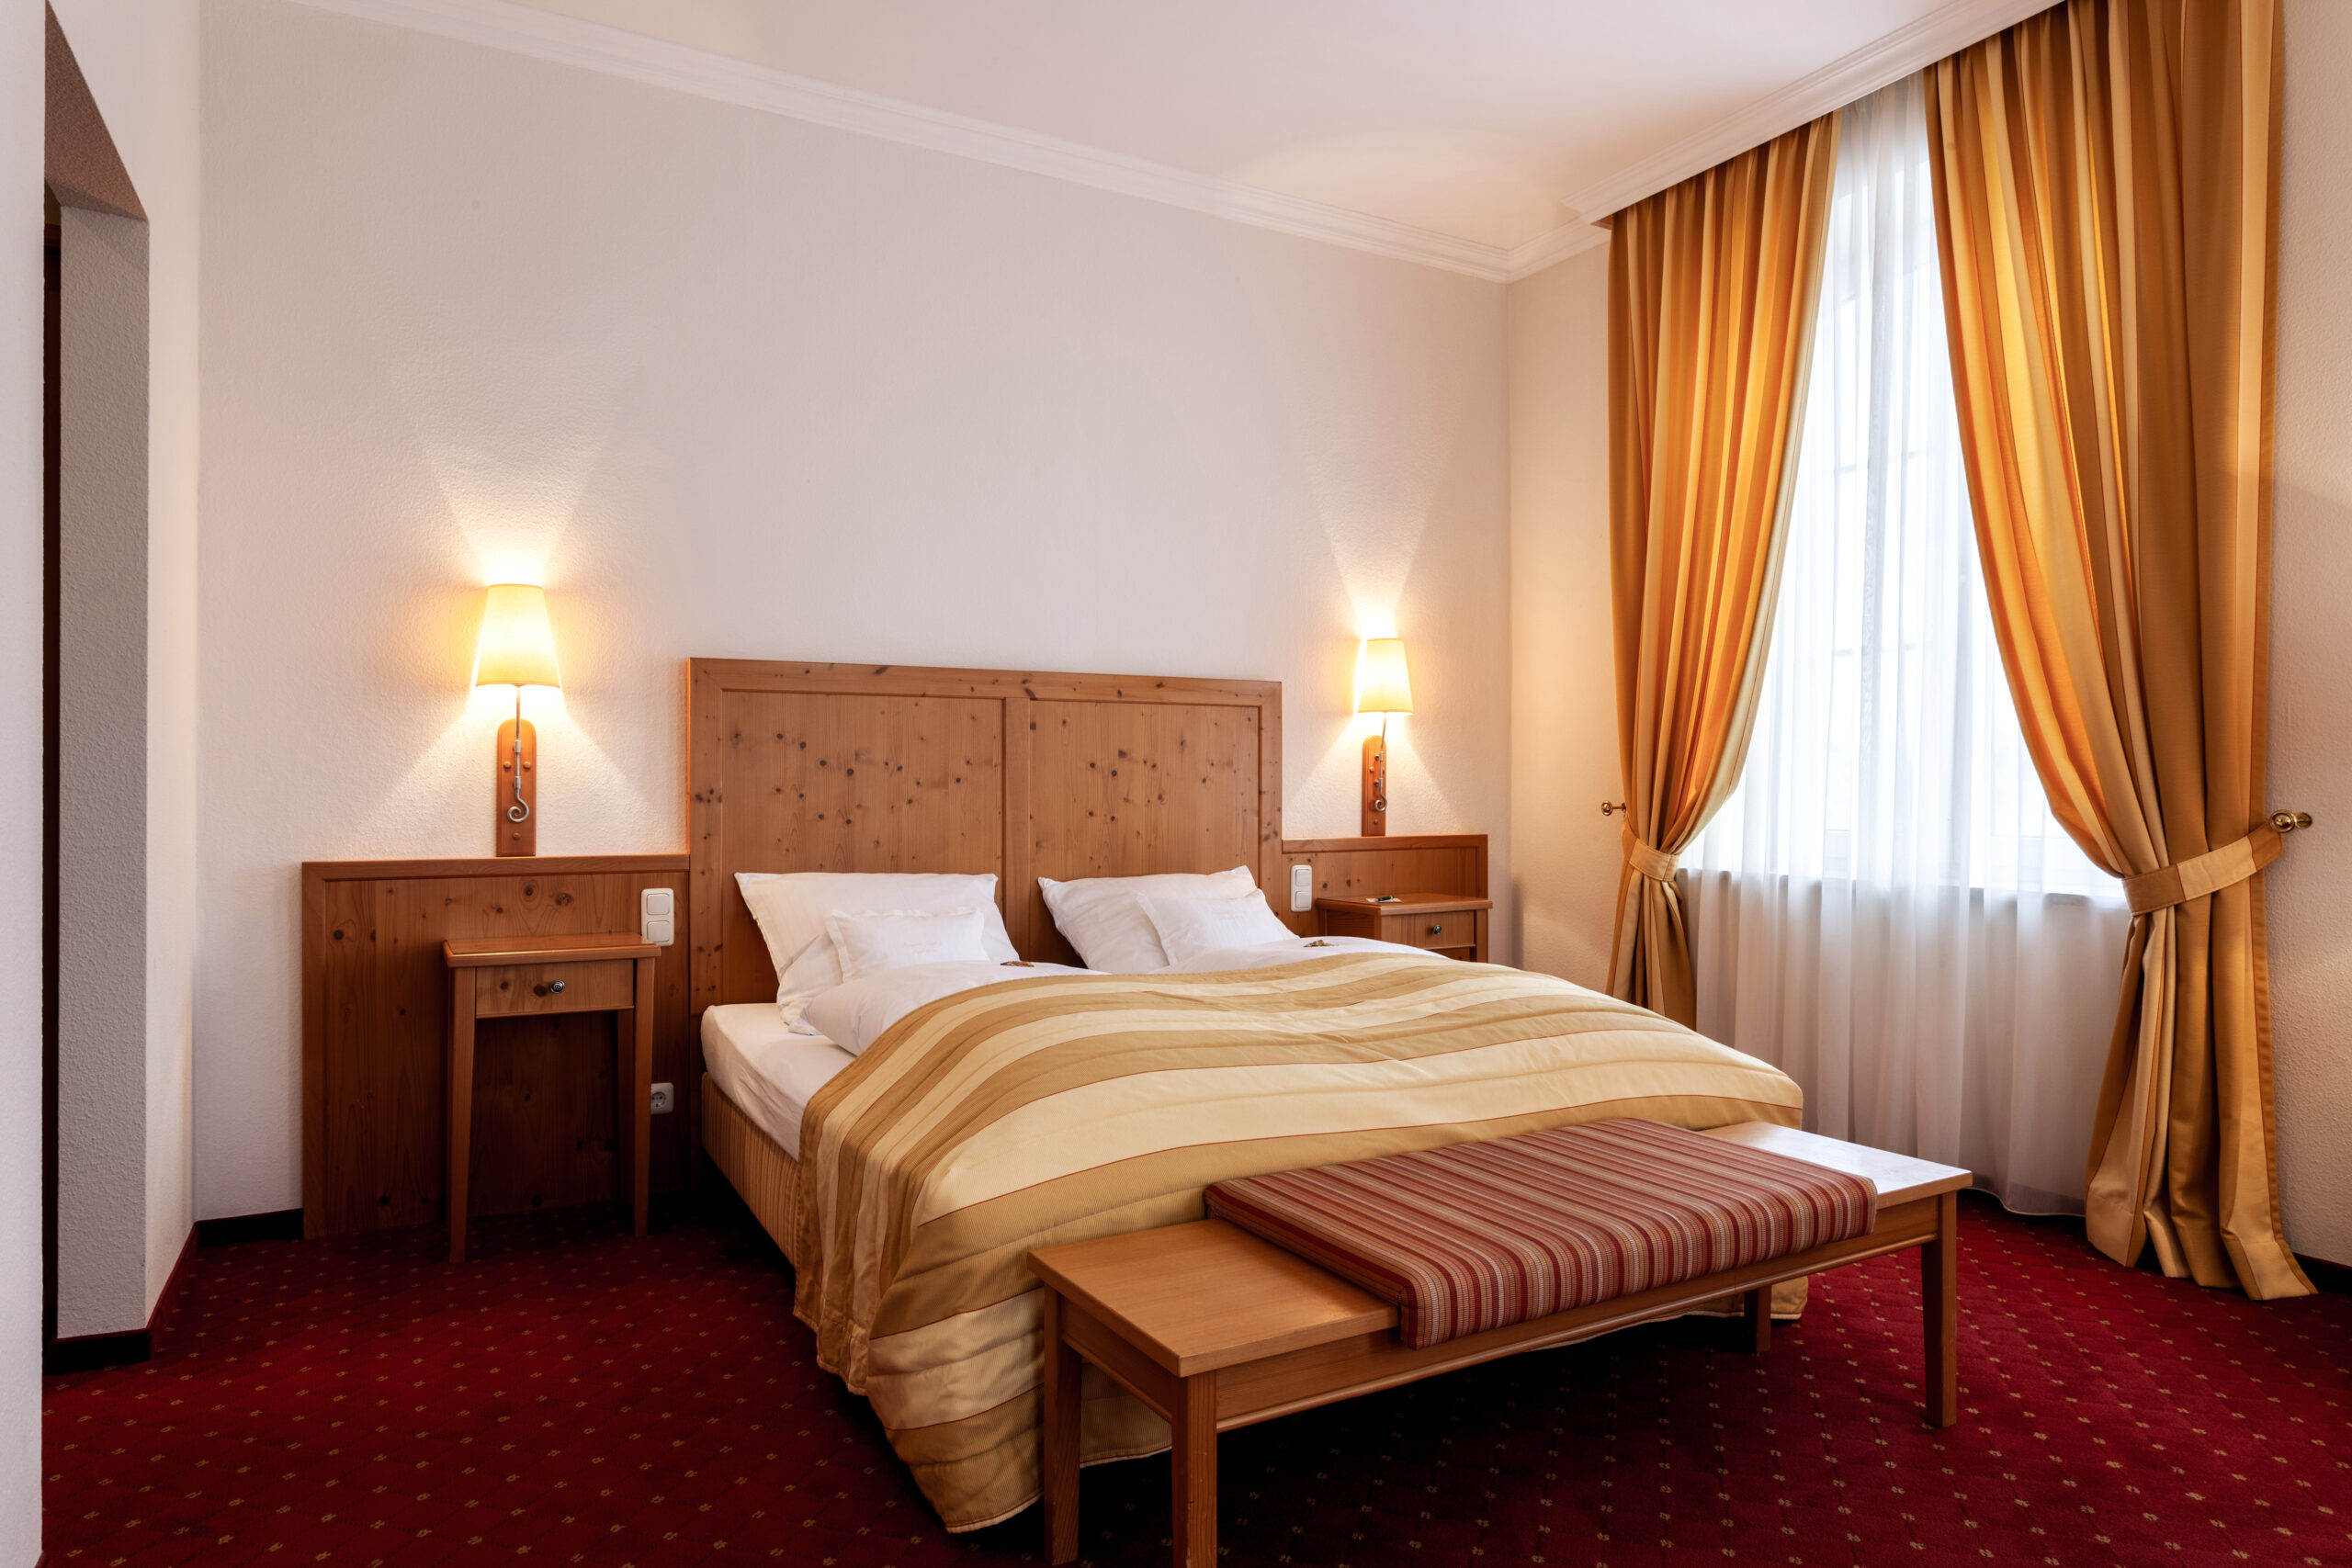 Ein großes Bett in einem unserer Hotelzimmer in Günz. Einladend mit orangenen Vorhängen und rotem Teppich.